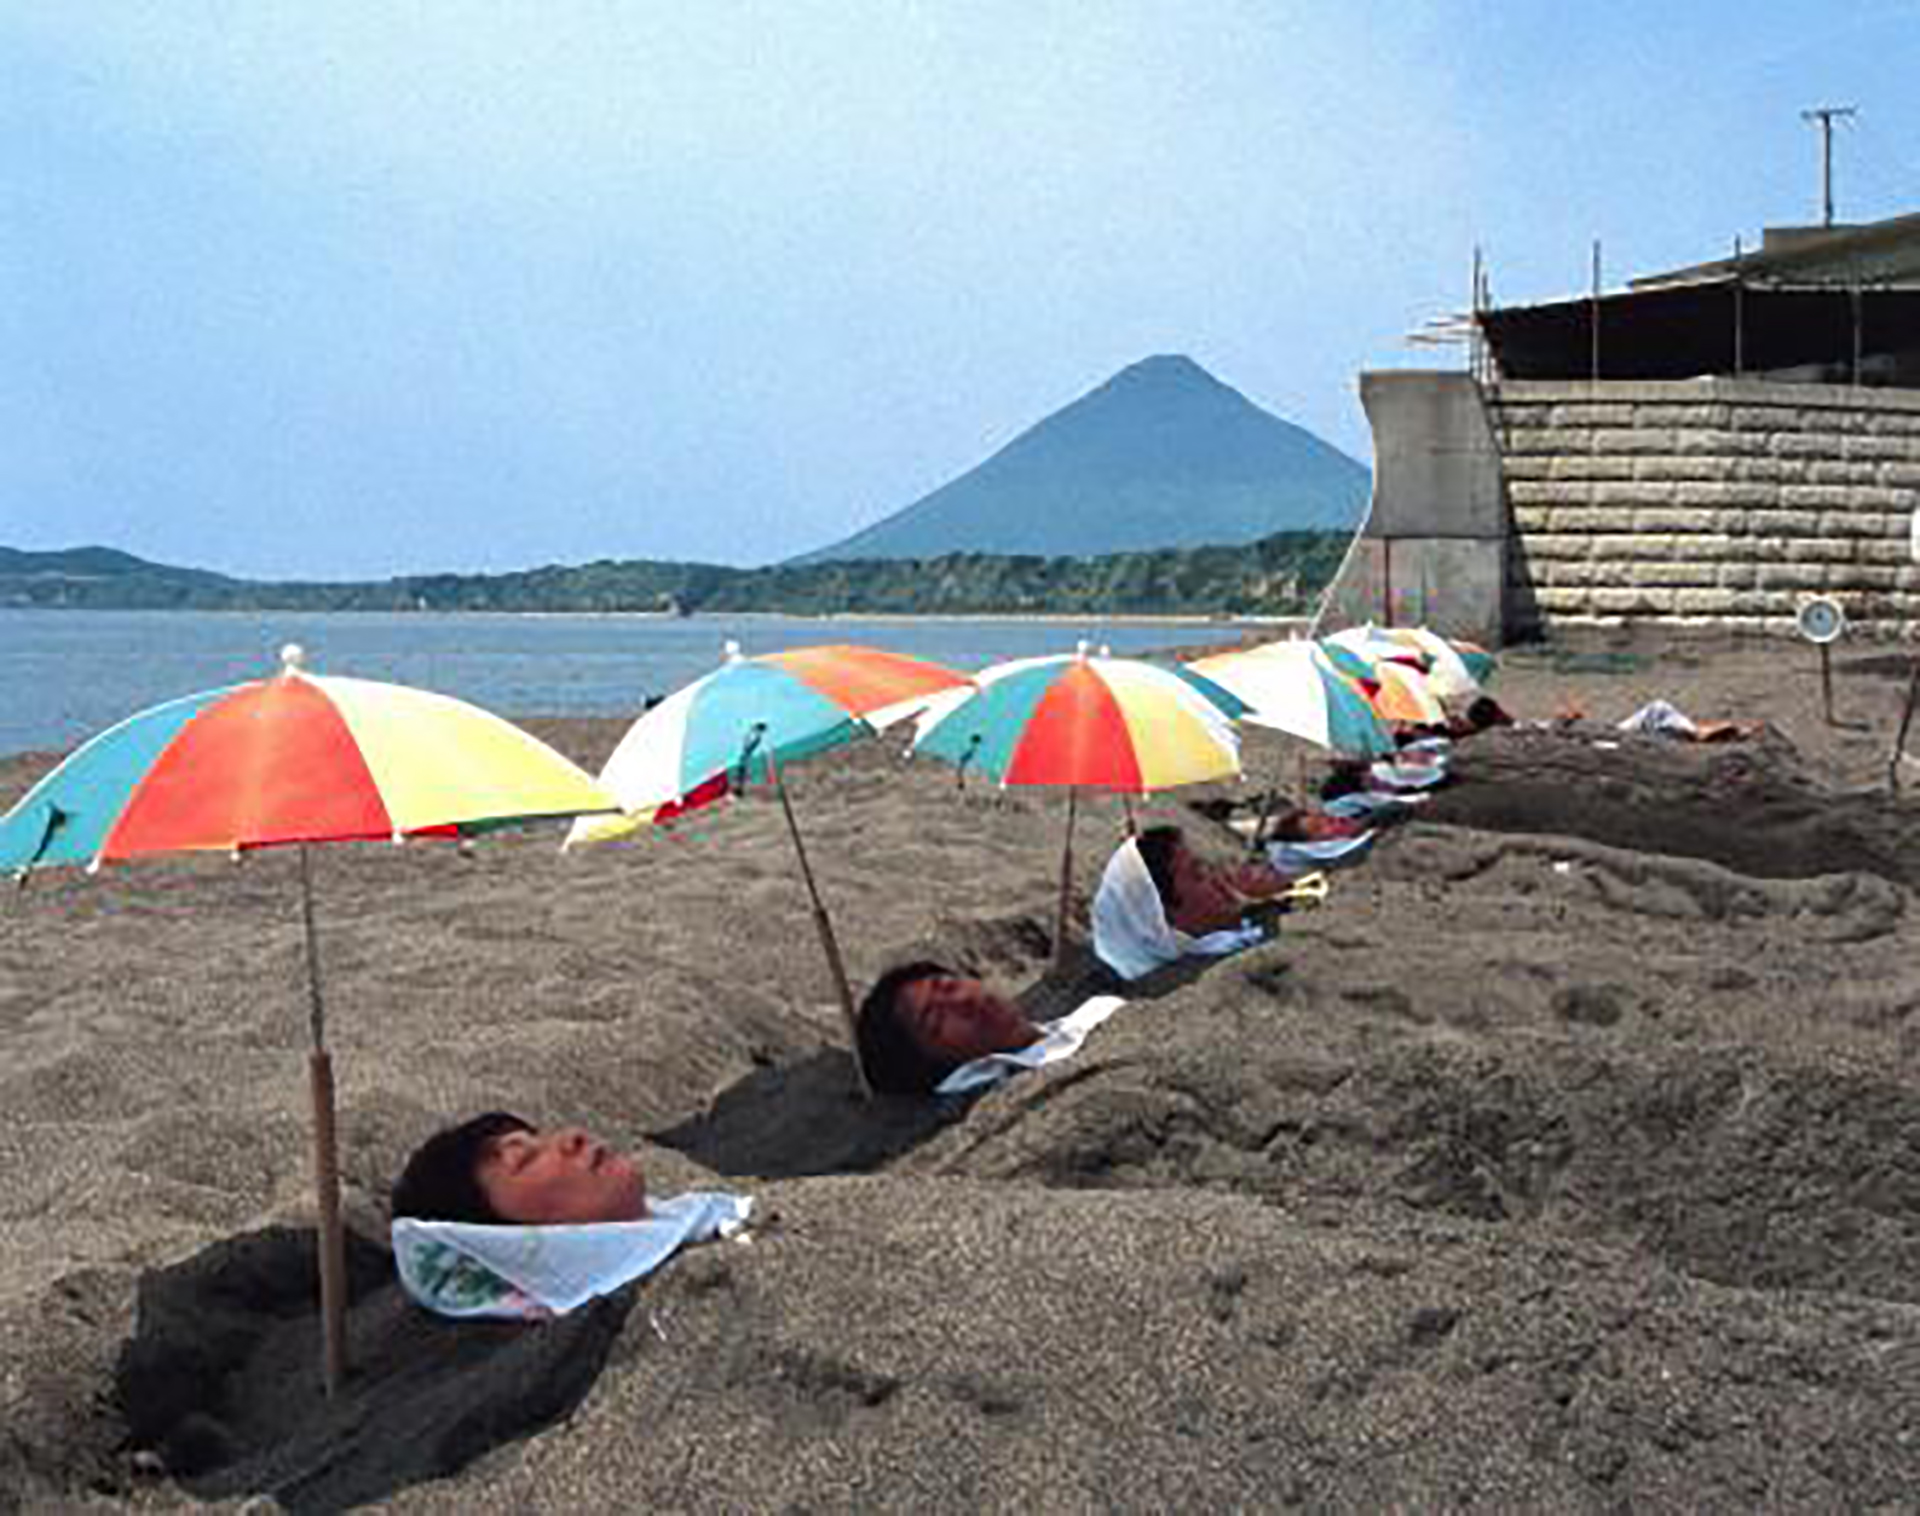 En Ibusuki, Japon, hay un complejo termal cuya playa contiene una atracción interesantísima: los baños de arenas volcánicas